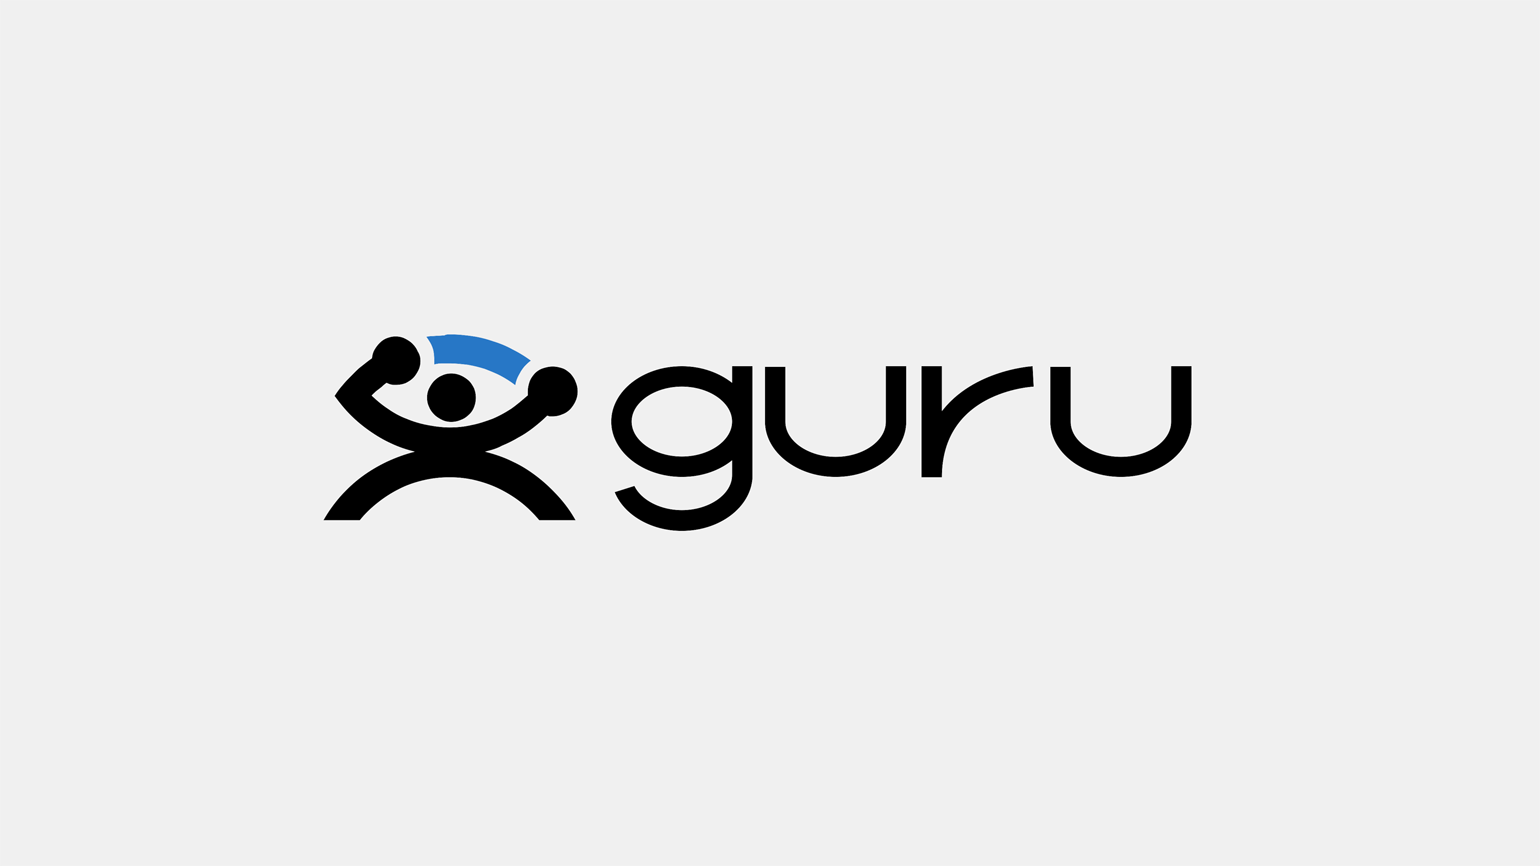 Https guru. Гуру лого. Guru freelance. Guru.com logo. Guru logo.